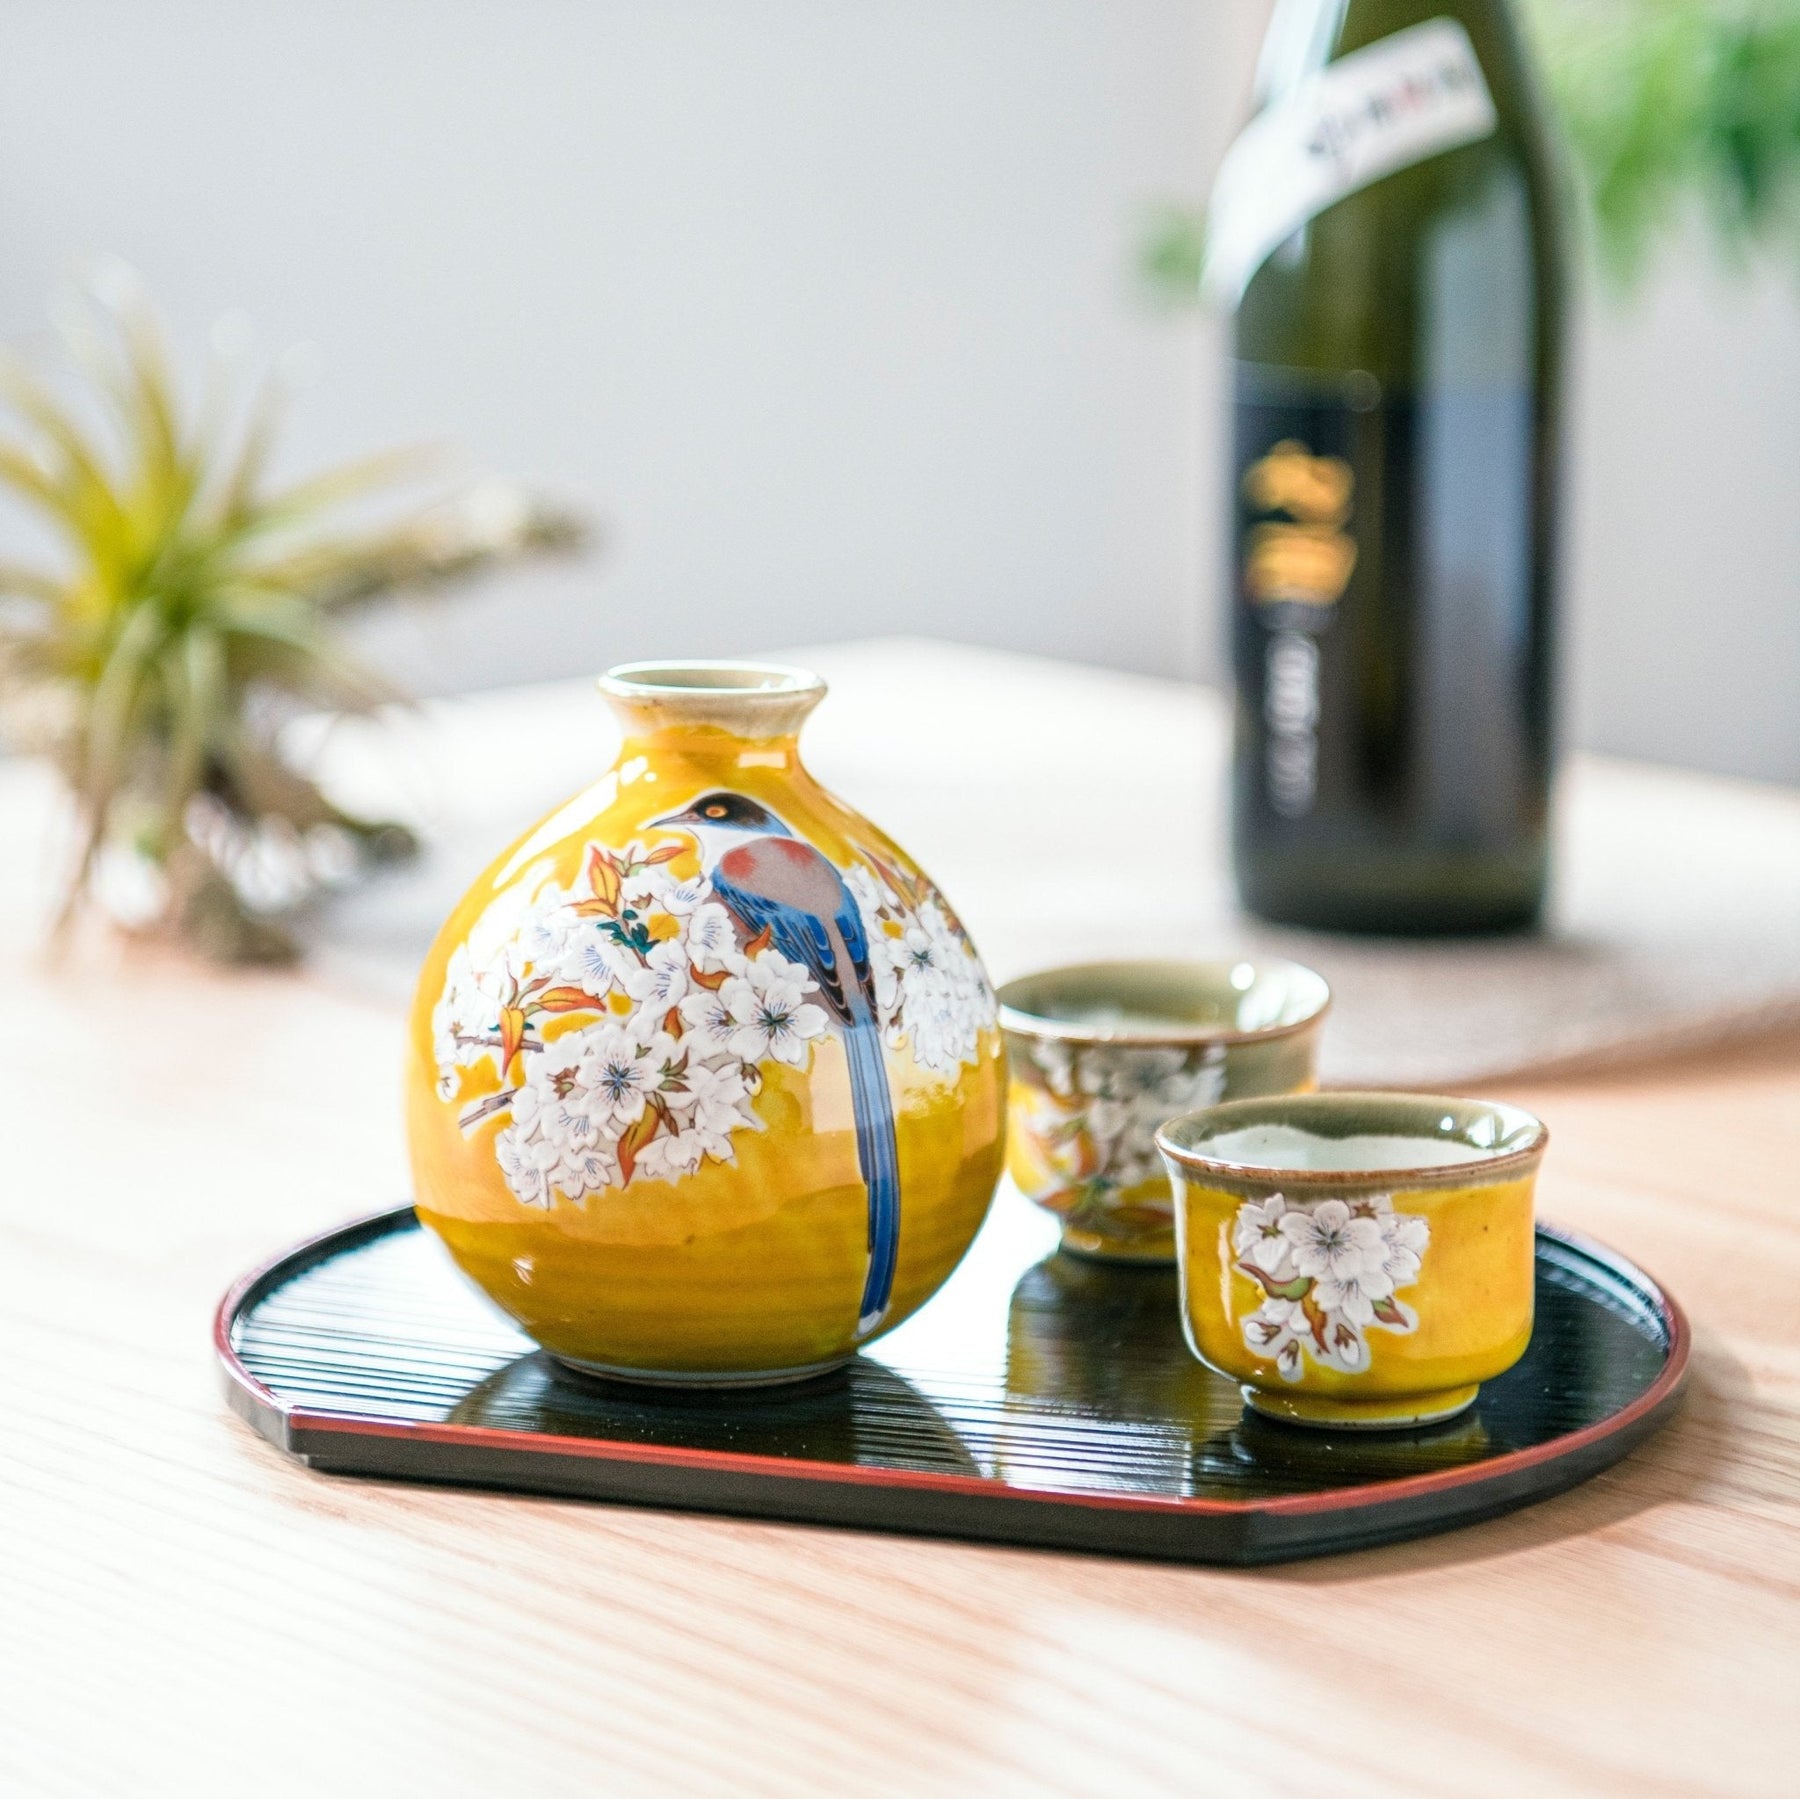 Seigaiha Ceramic Sake Set – Seigaihaya